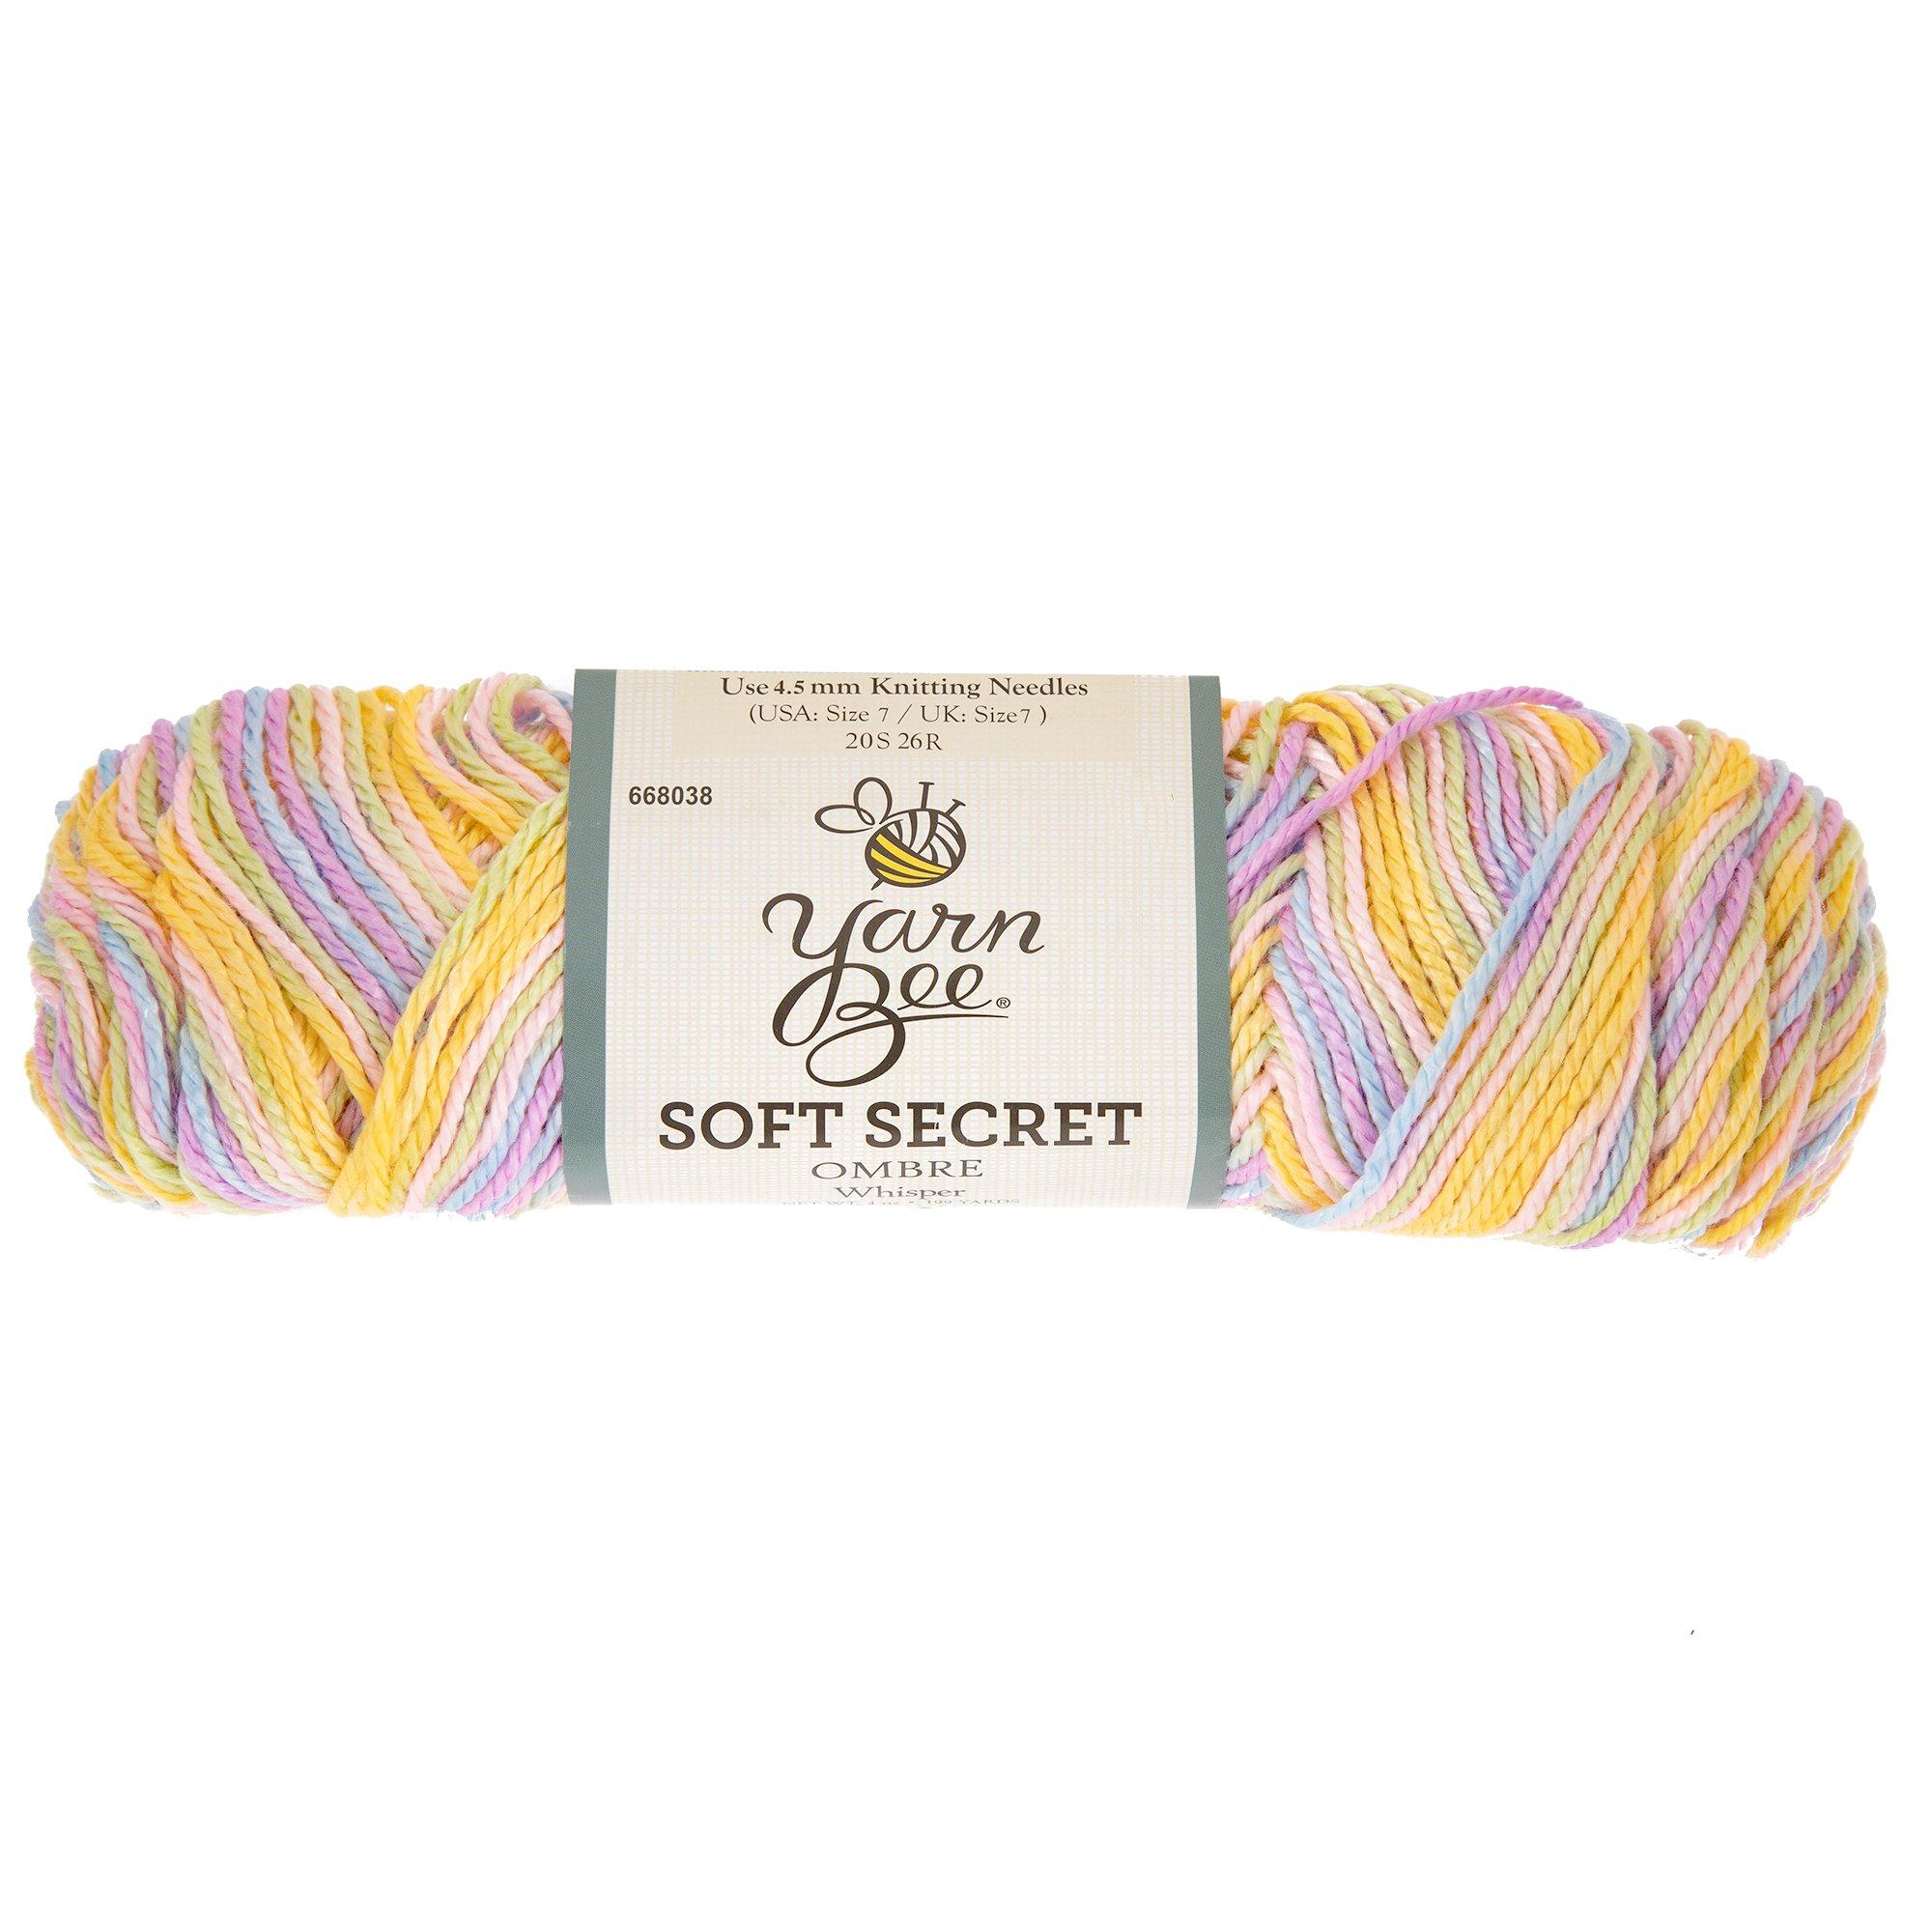 Yarn Bee Soft & Sleek Yarn, Hobby Lobby, 1625201